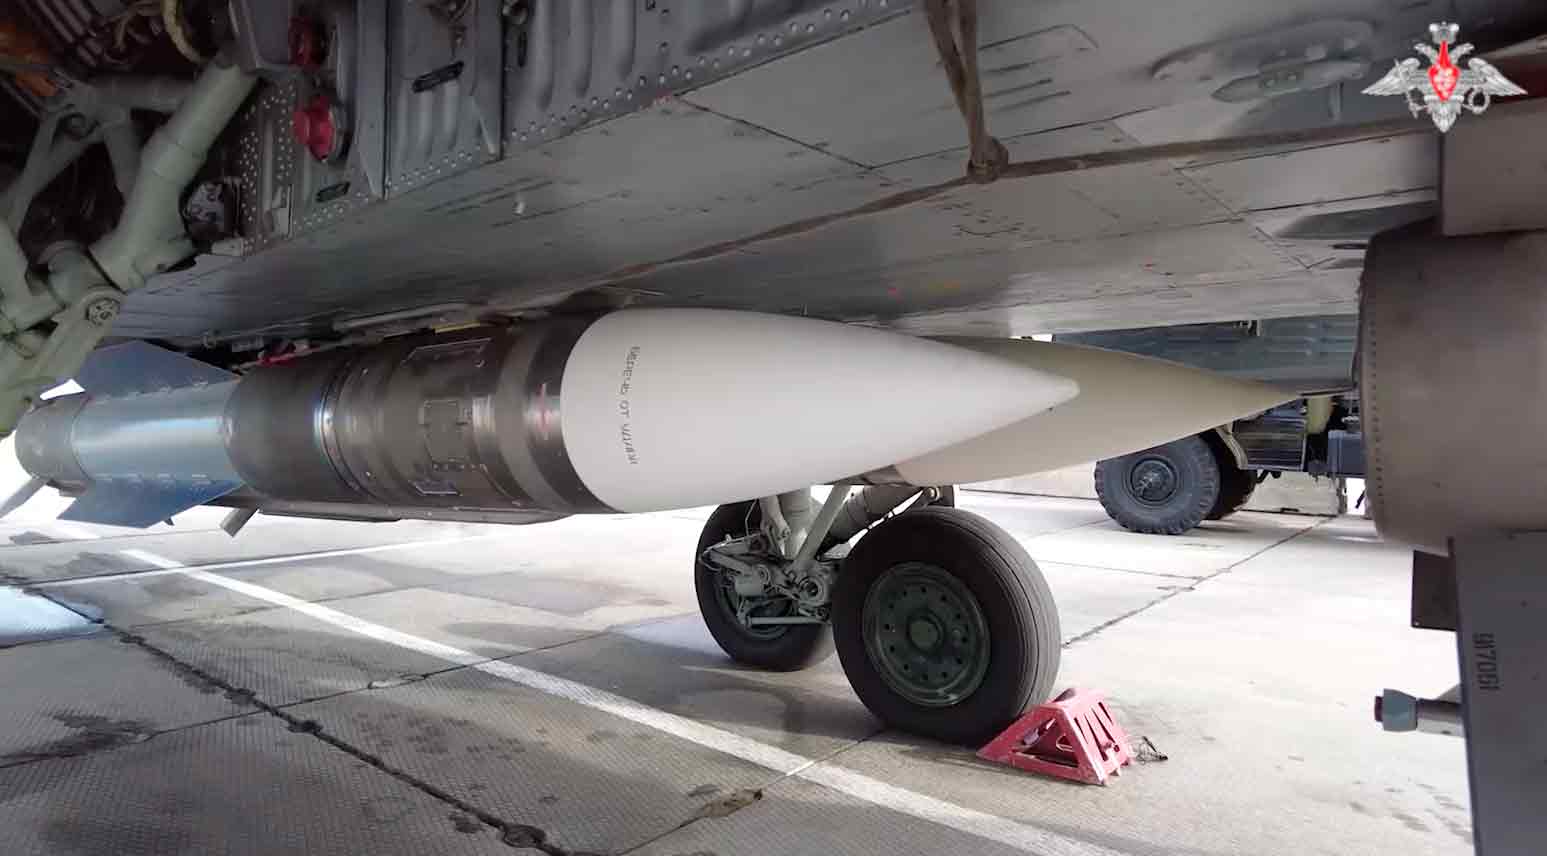 A videó bemutatja a MiG-31 vadász repülőgép légierő általi légi járőrtevékenységét az elavult, de erőteljes R-33 hosszútávú rakétákkal. Fotó és videó: Reprodução Telegram t.me/mod_russia